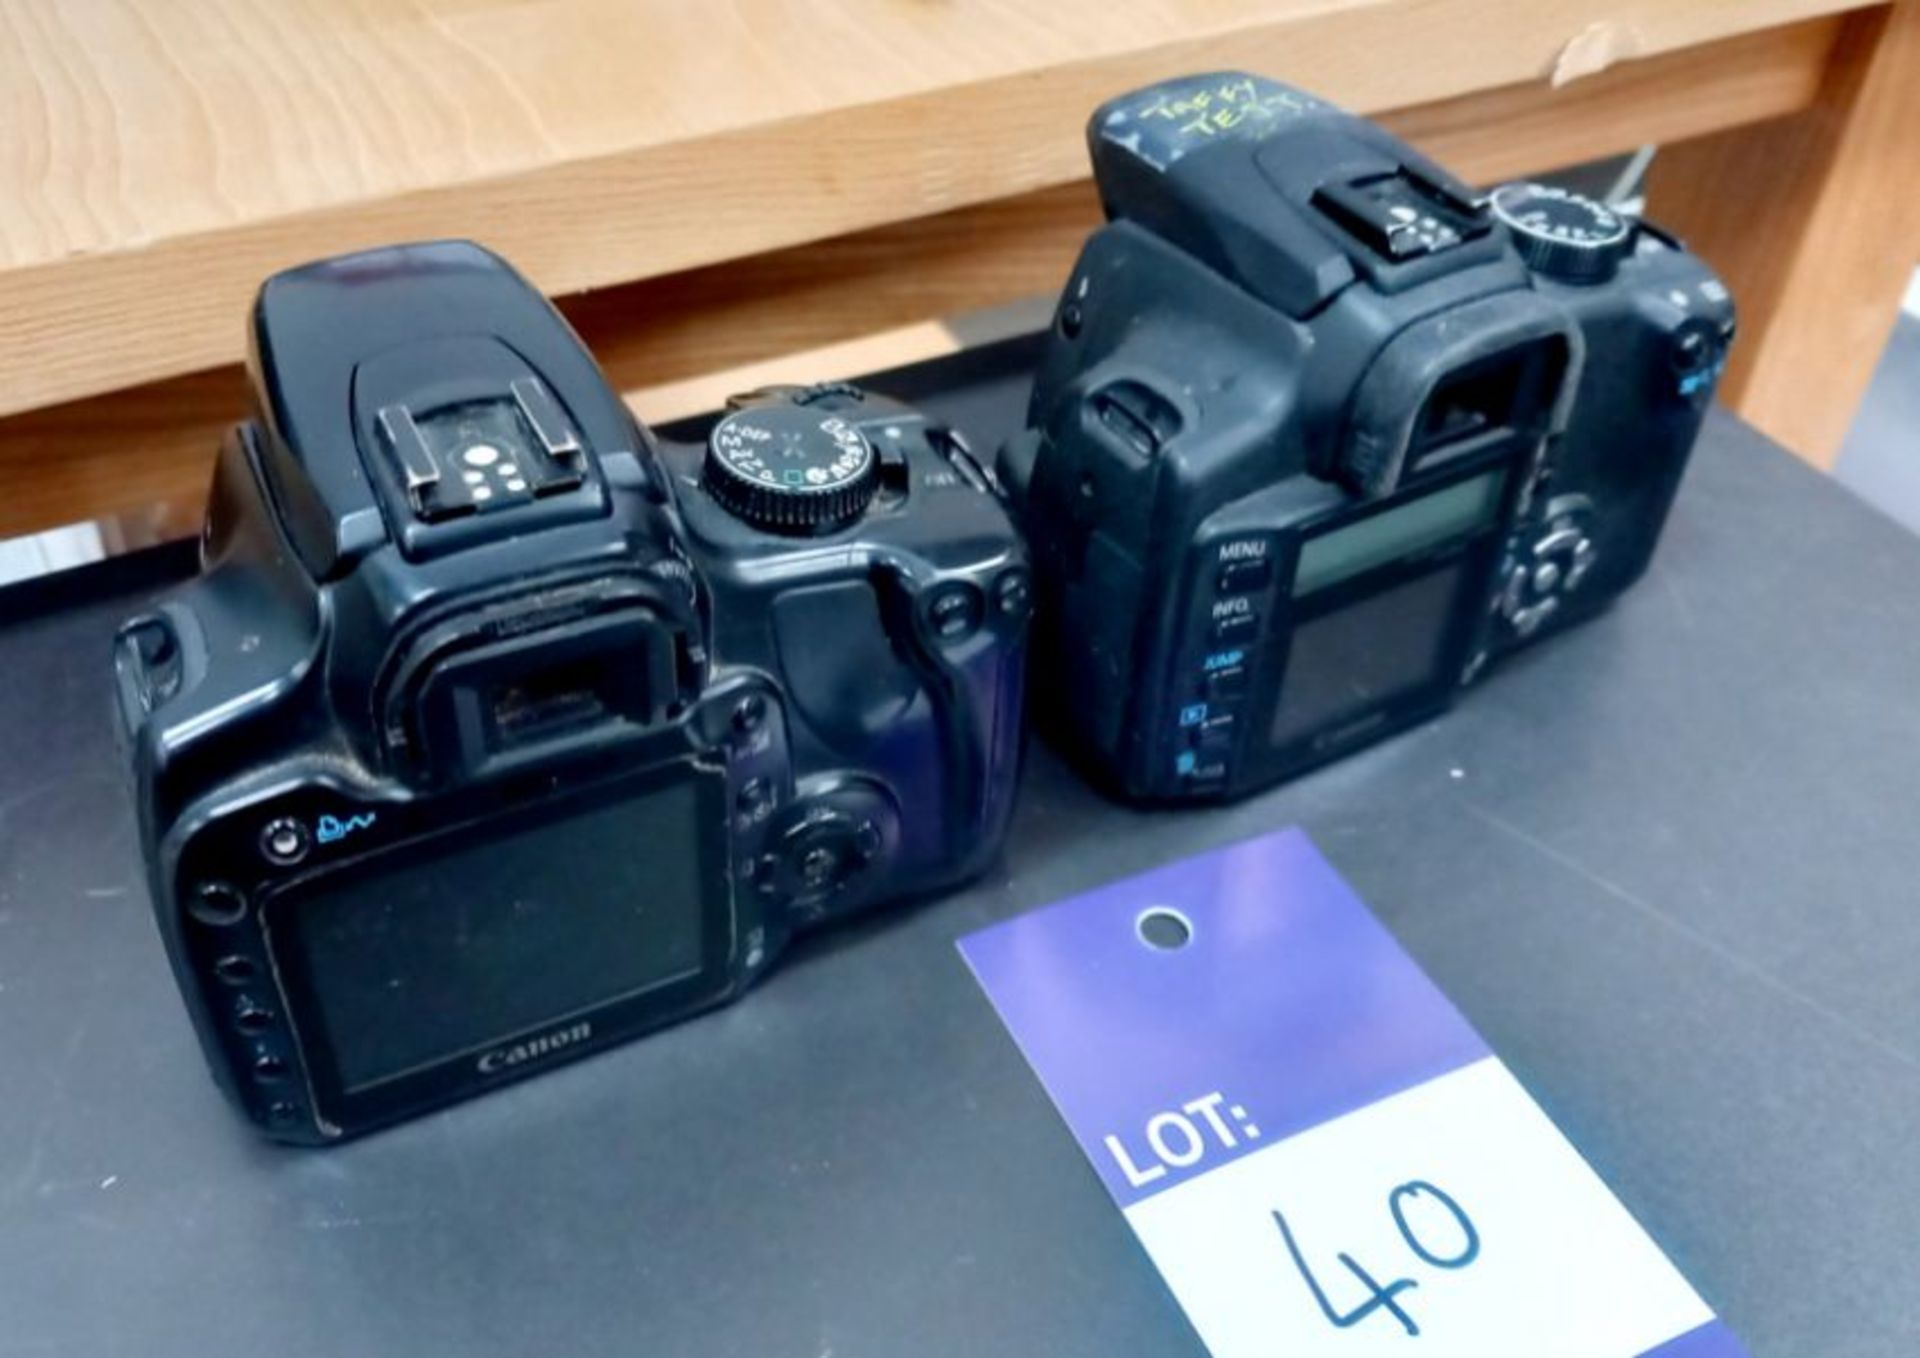 Pentax 50-200mm F.4 - 5.6 ED & Makinon 35-70mm F2.8 as well as Canon EOS350D & Canon EOS400D - Bild 5 aus 6